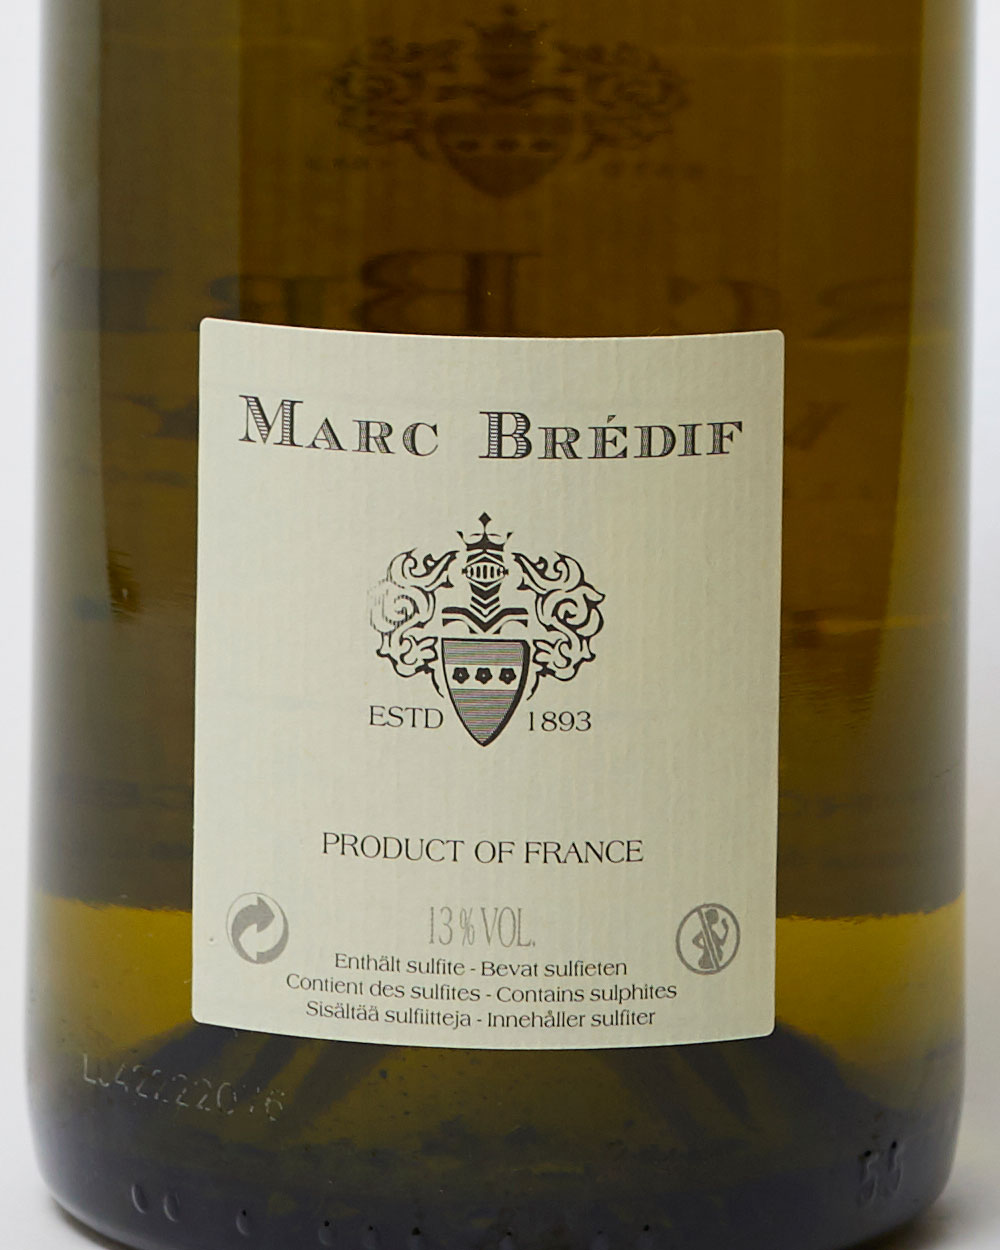 Marc Brédif white wine label